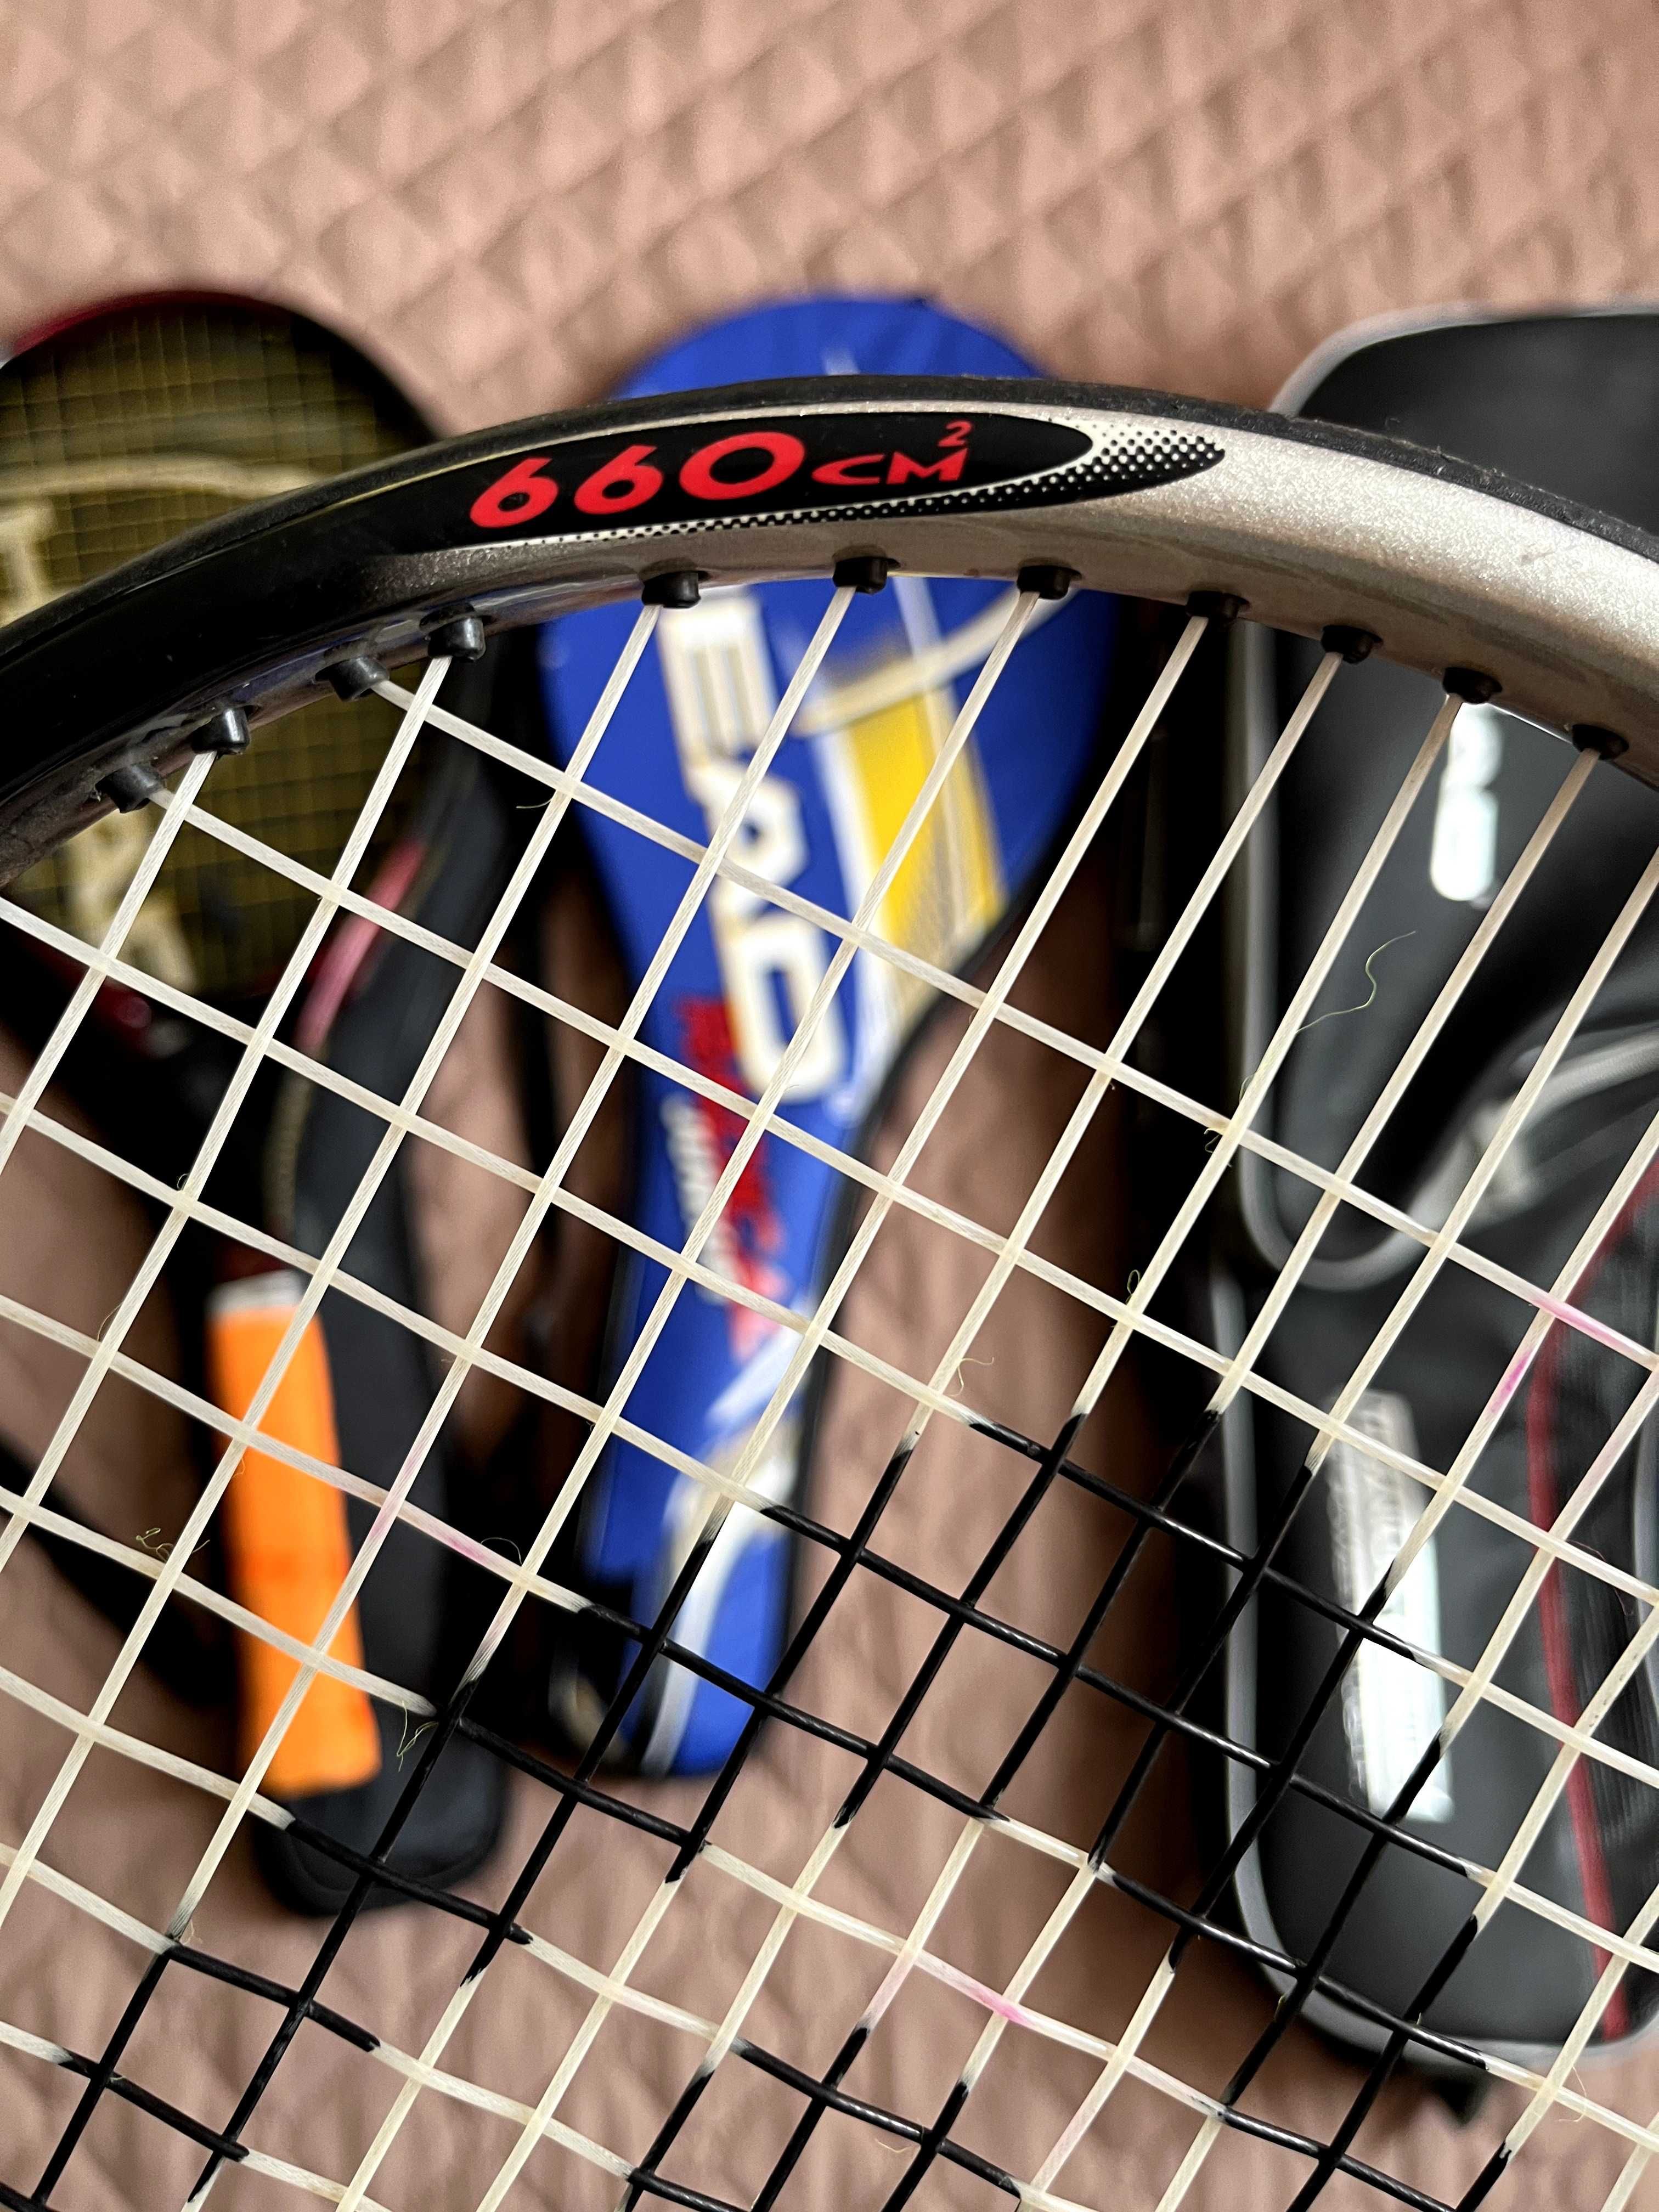 Тенис ракета HEAD